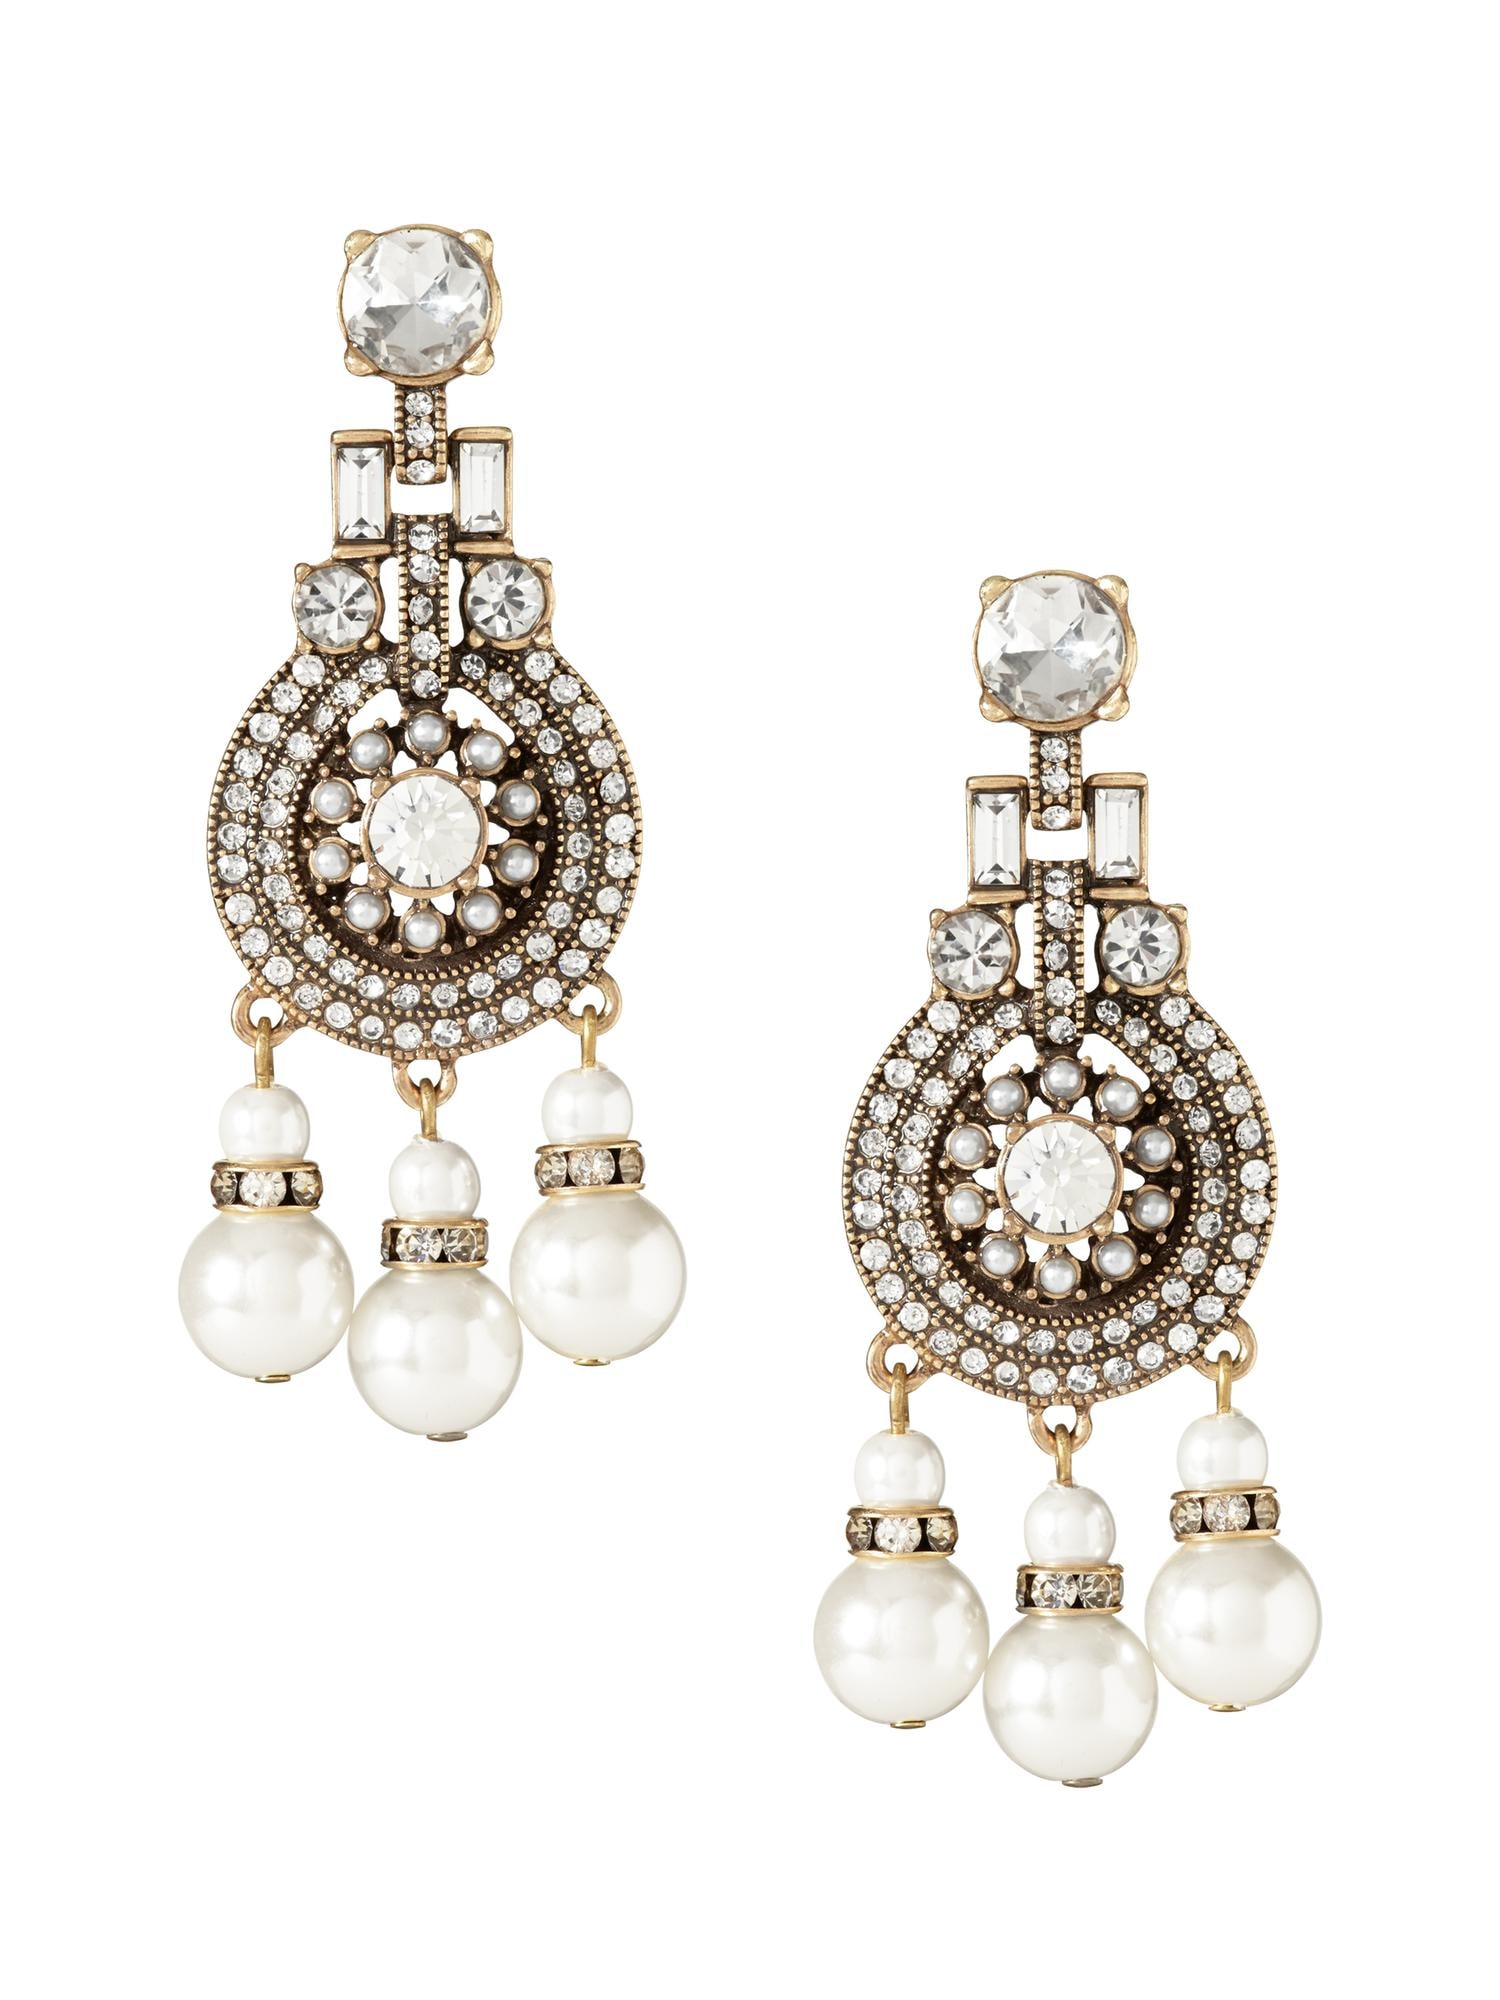 Pearls Please Chandelier Earring